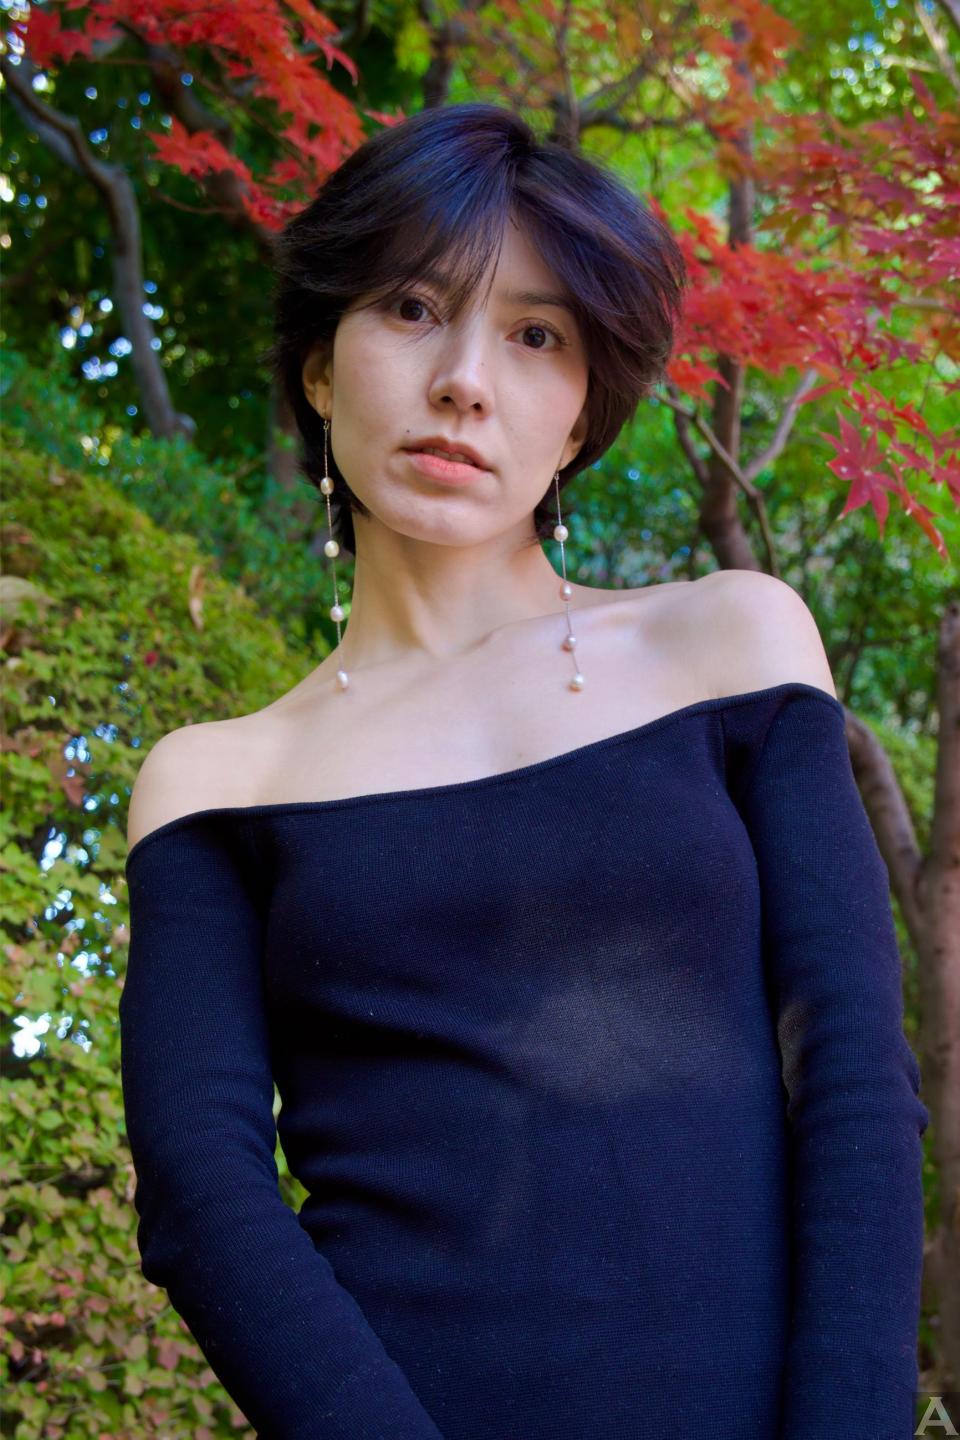 東京外国人モデル事務所アクアモデル所属のアジア人モデルのウミ